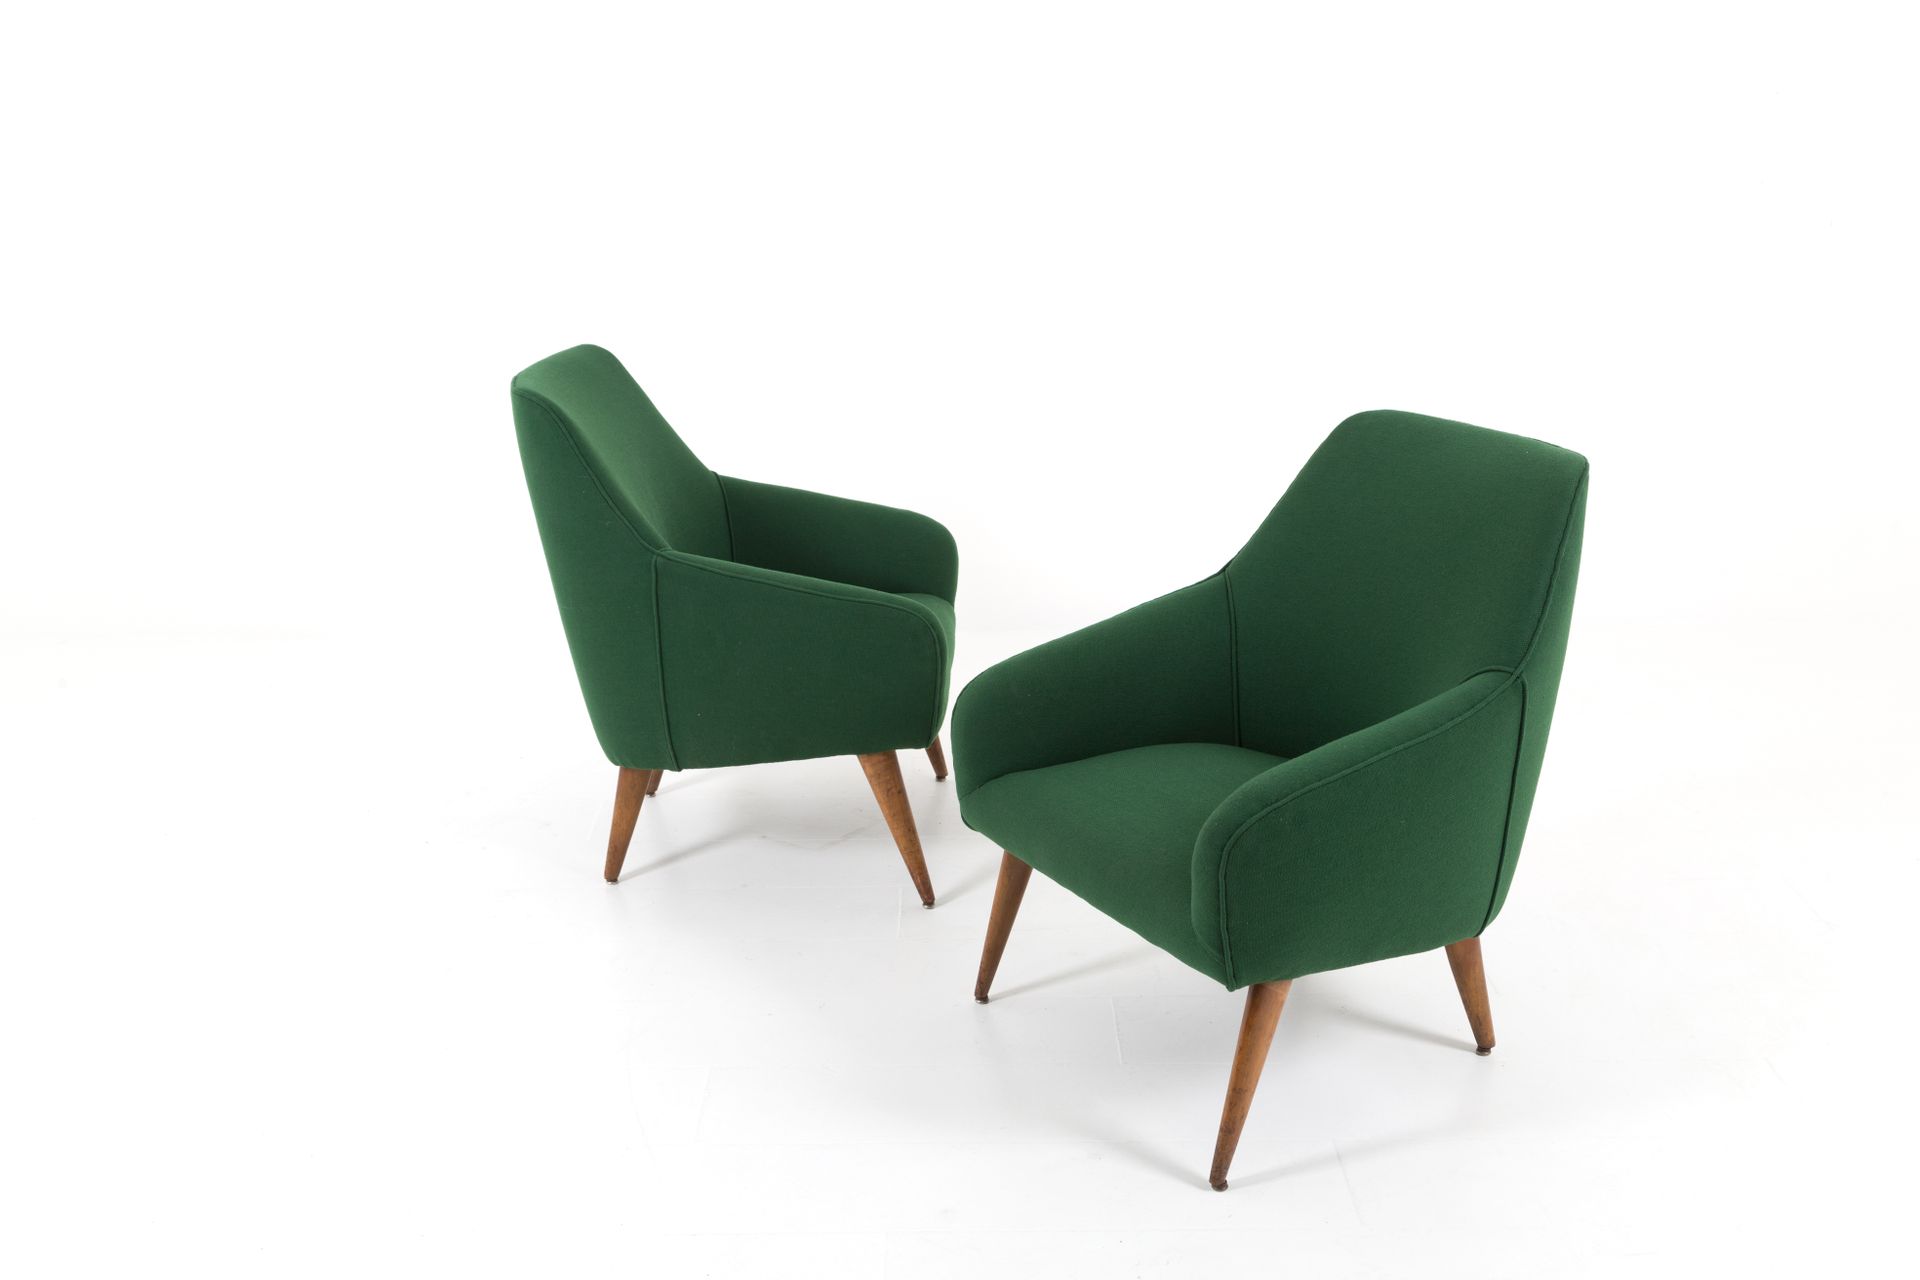 GIO PONTI for CASSINA. Pair of wooden armchairs GIO PONTI (Milan, 1891-1979) pou&hellip;